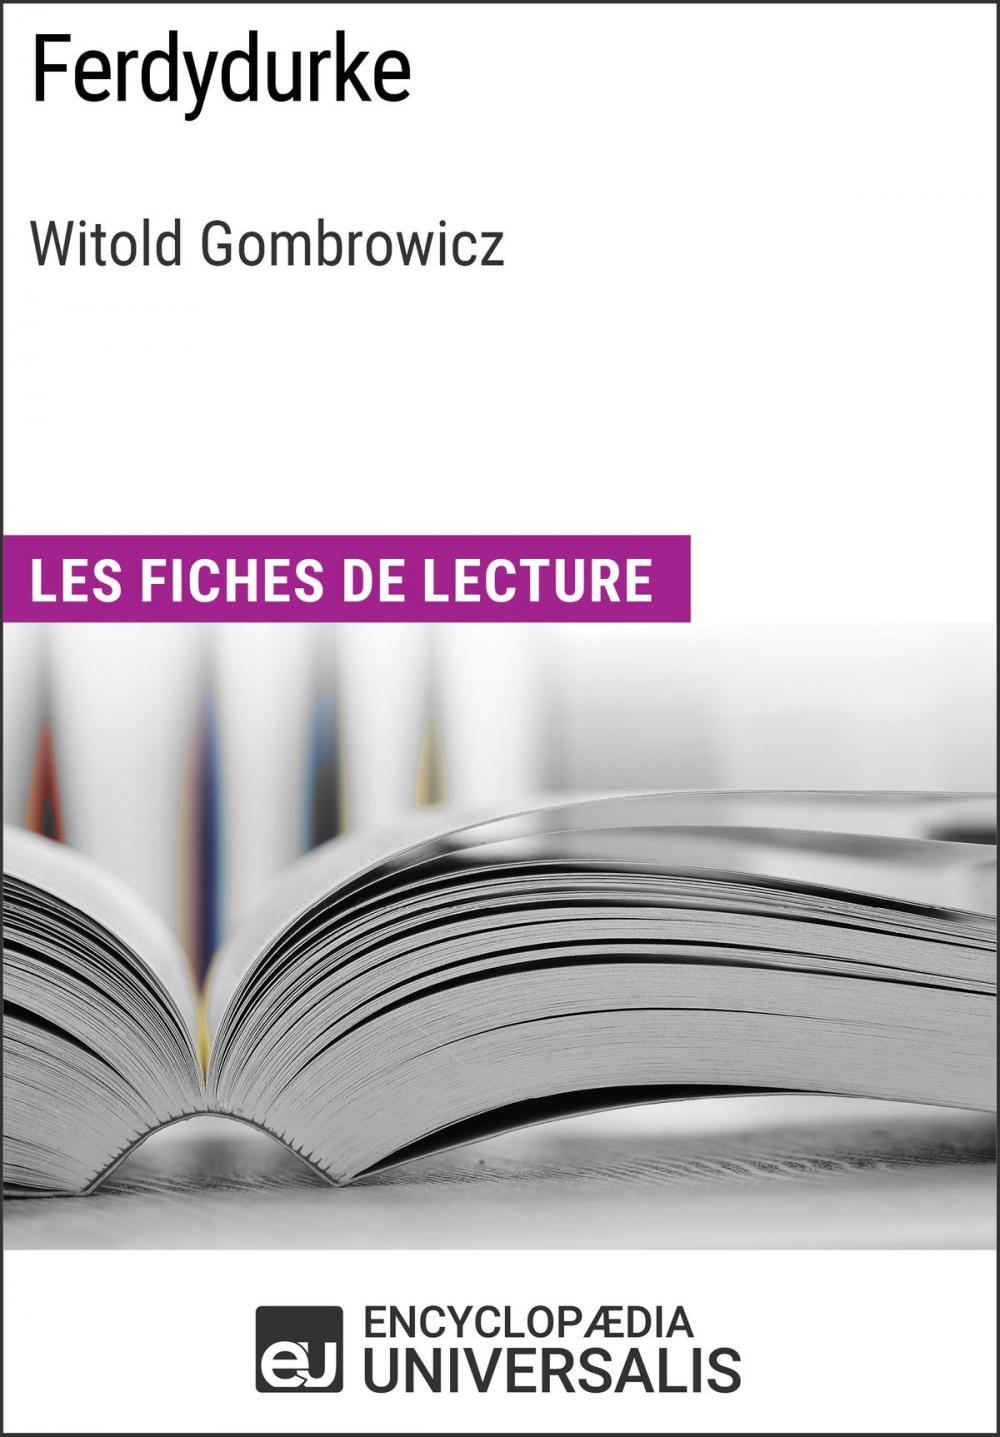 Big bigCover of Ferdydurke de Witold Gombrowicz